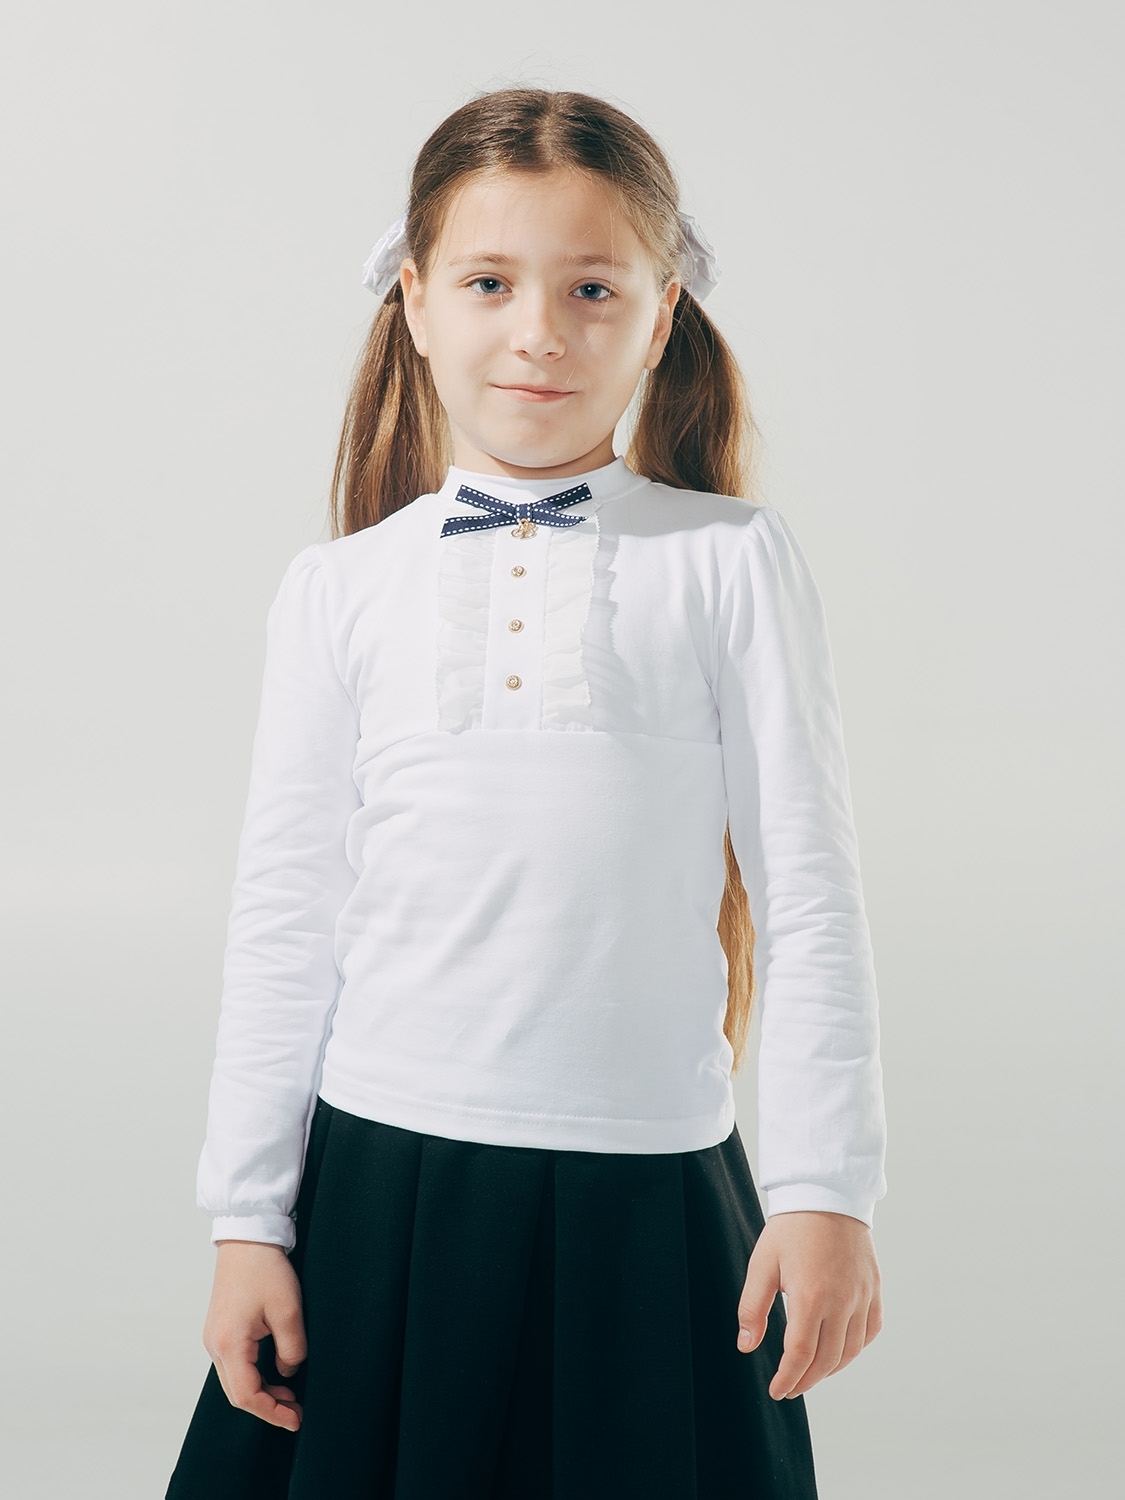 Блуза для девочки, арт. 114612, возраст от 11 до 14 лет